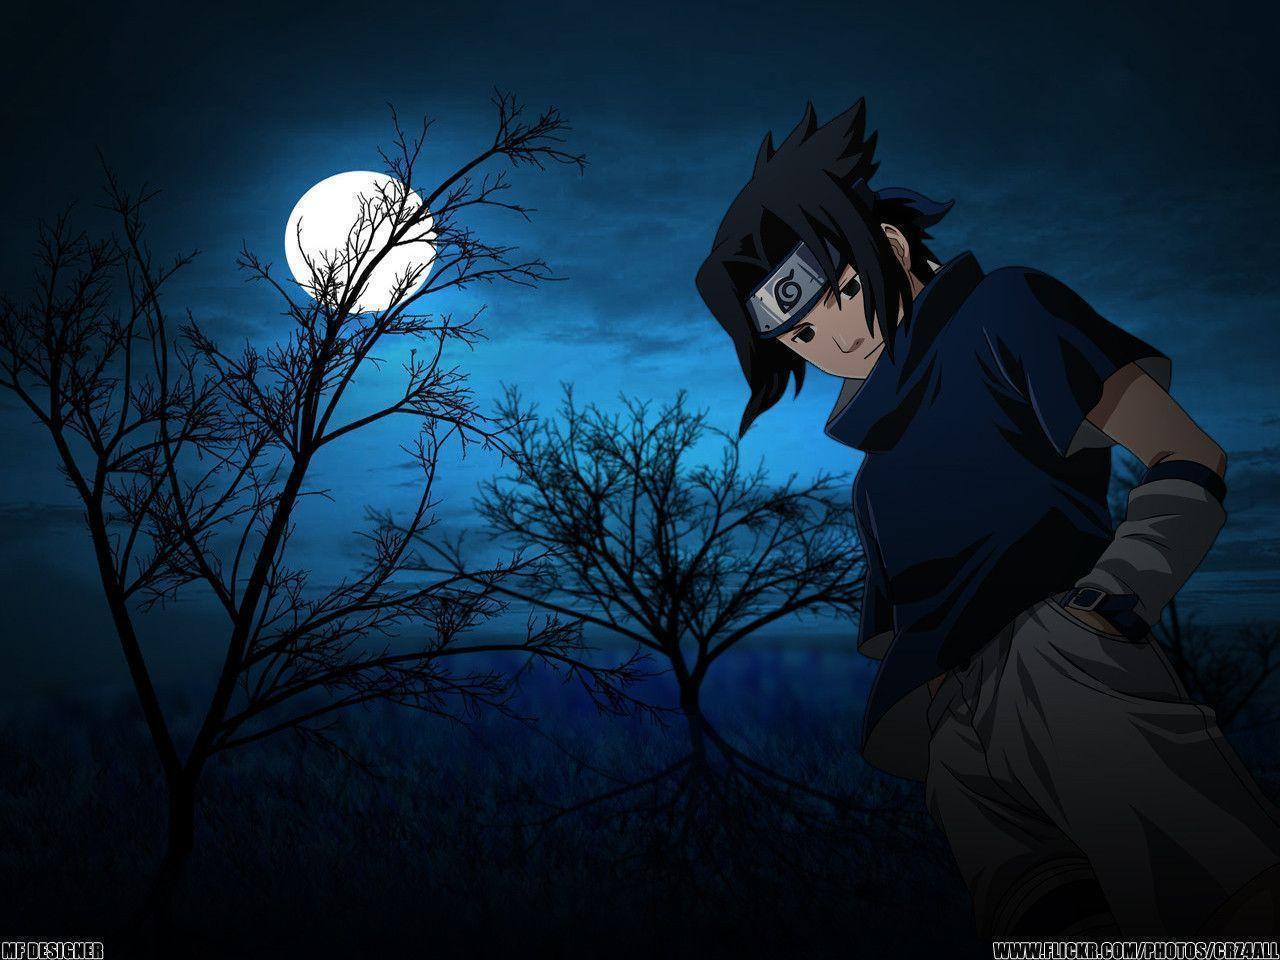 Uchiha Sasuke Alone At Night HD Wallpaper Free Download. Wallsev